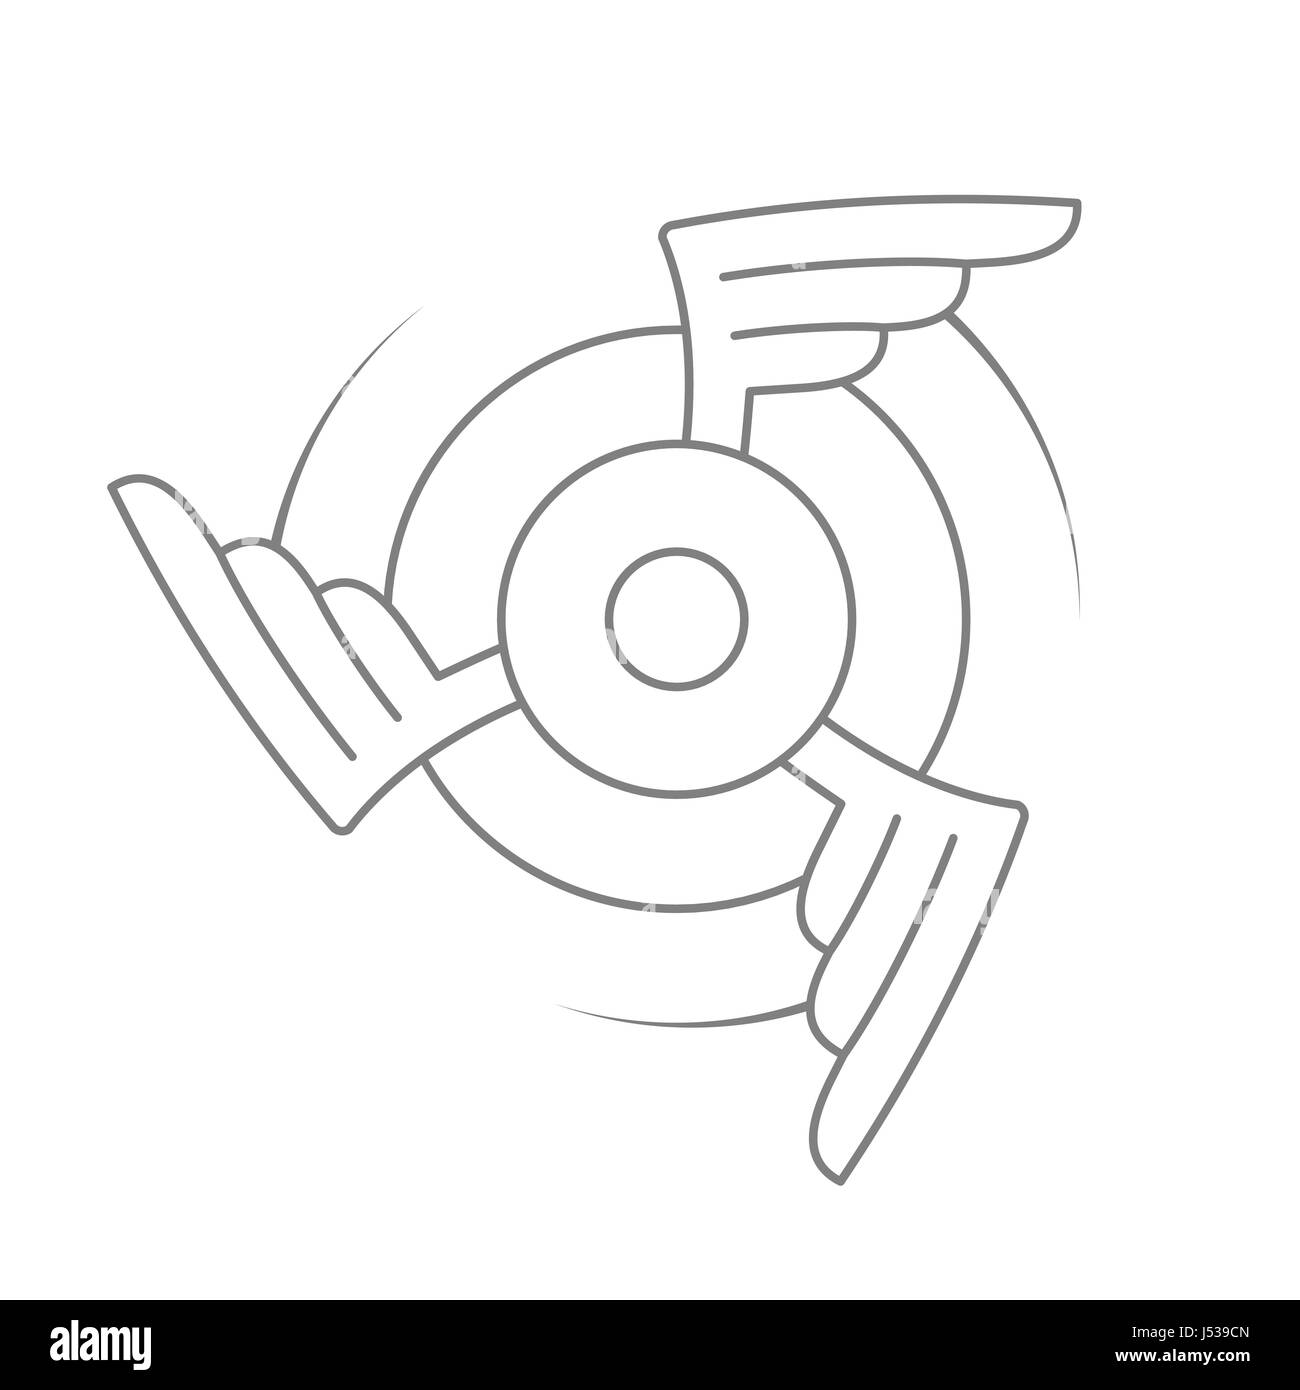 Emblème de l'aviation, d'un insigne ou logo. L'icône de l'aviation civile ou militaire. Symbole de la force aérienne. La conception des ailes tournantes. Stock Vector illustration. Illustration de Vecteur